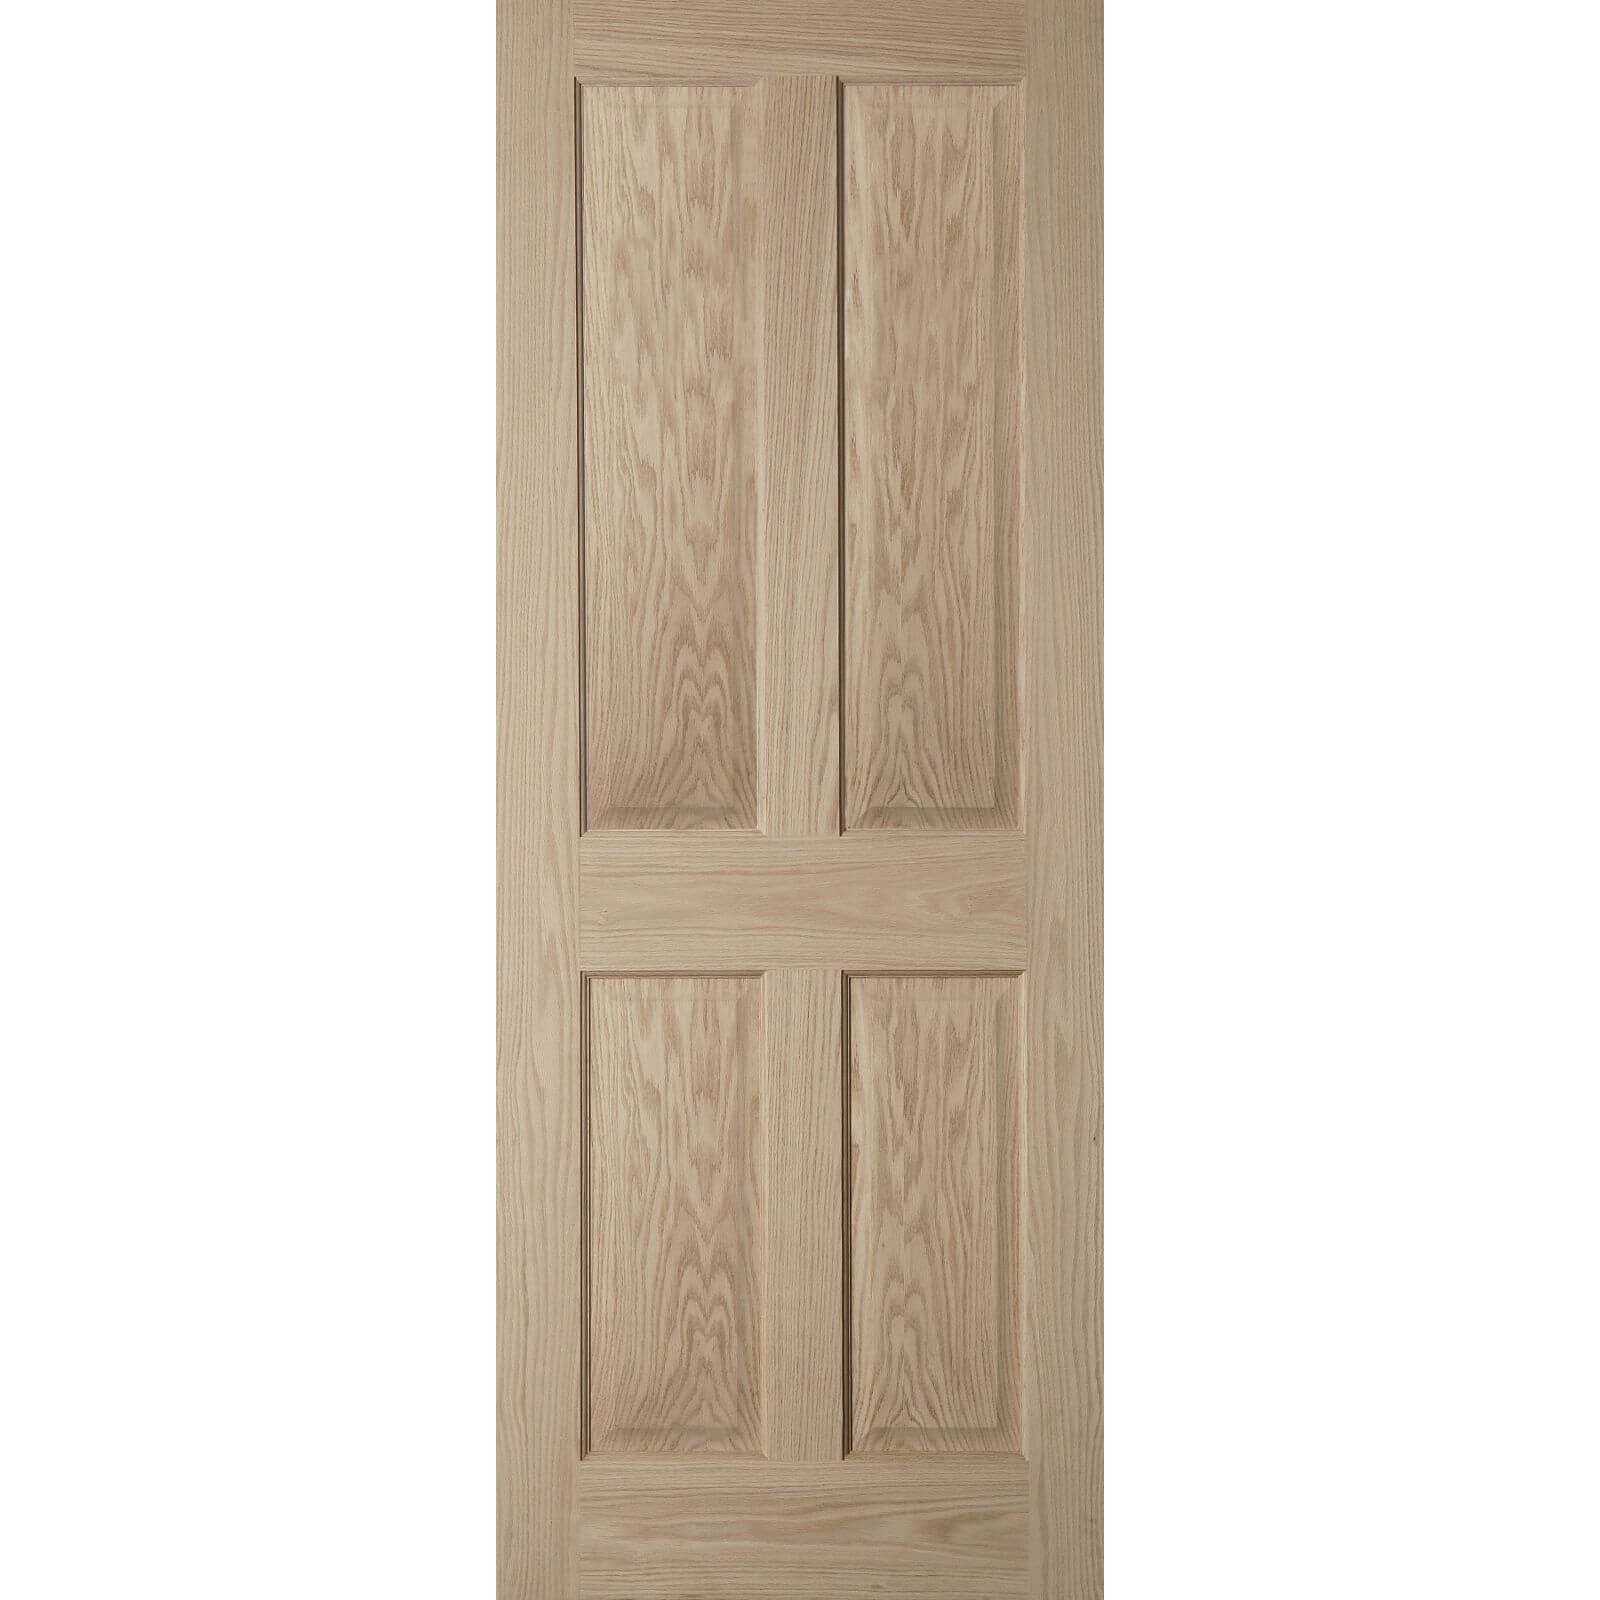 4 Panel Oak Veneer Internal Door - 626mm Wide